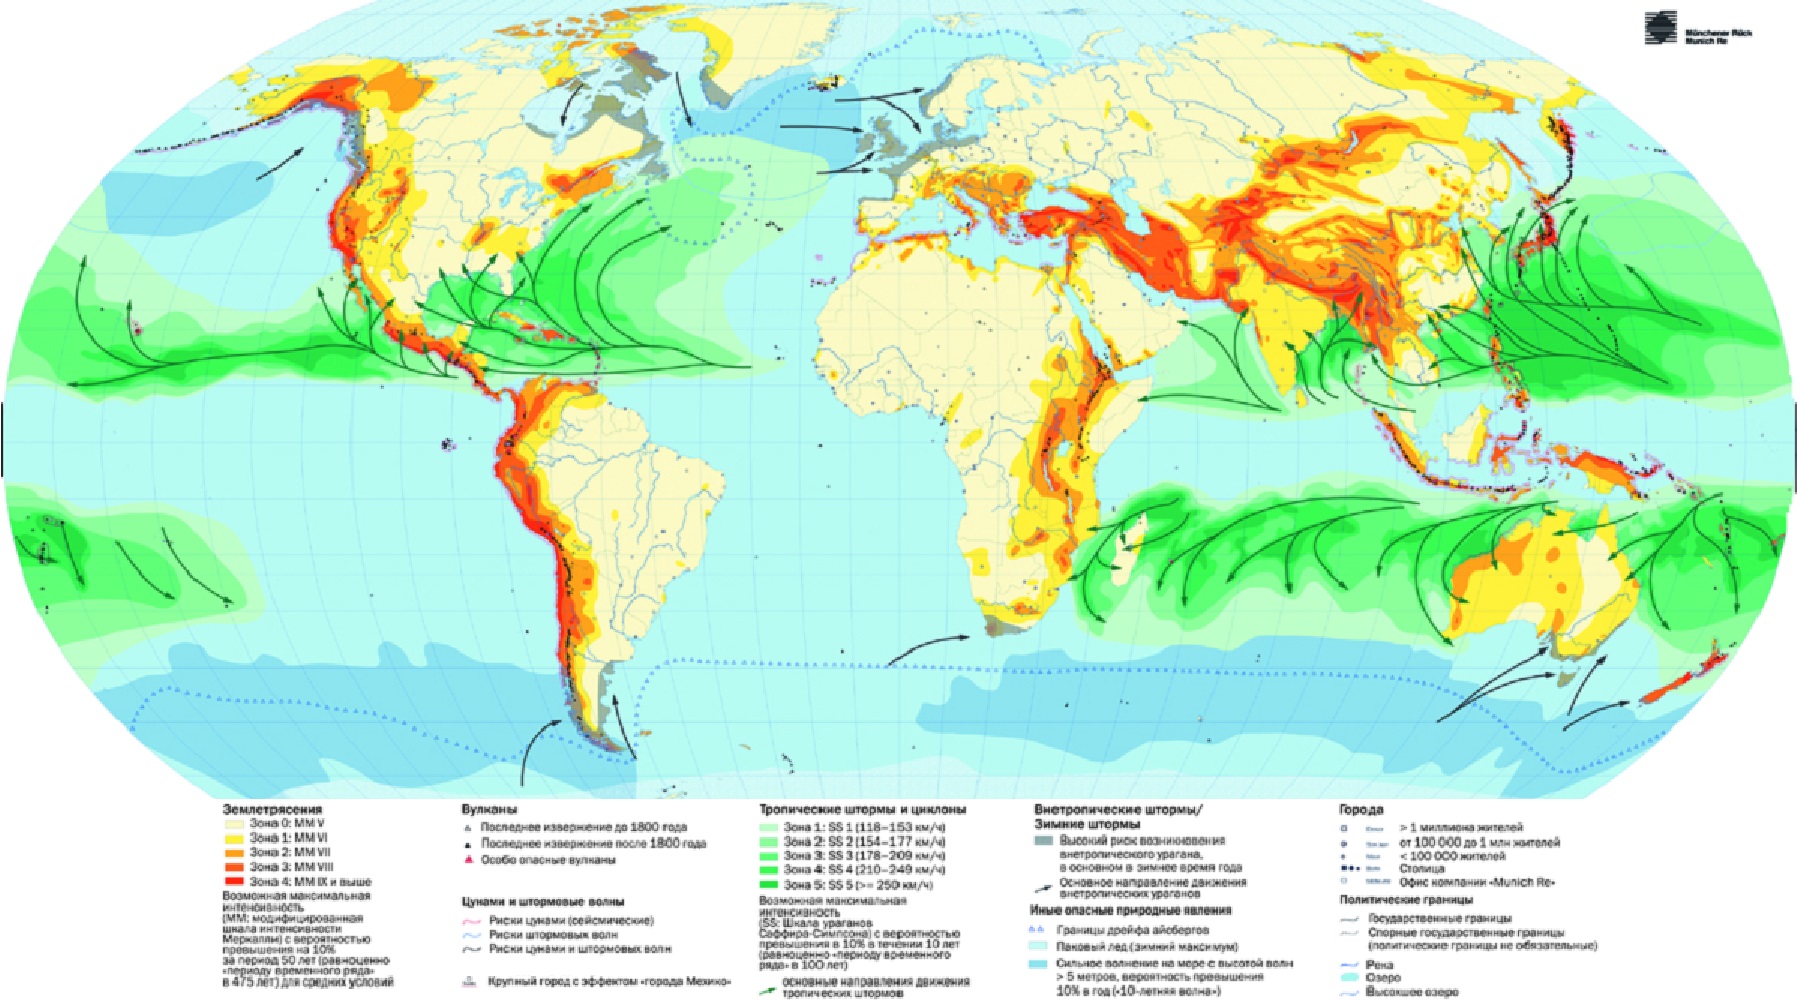 Зоны периодических стихий на суше, в океане и атмосфере Земли